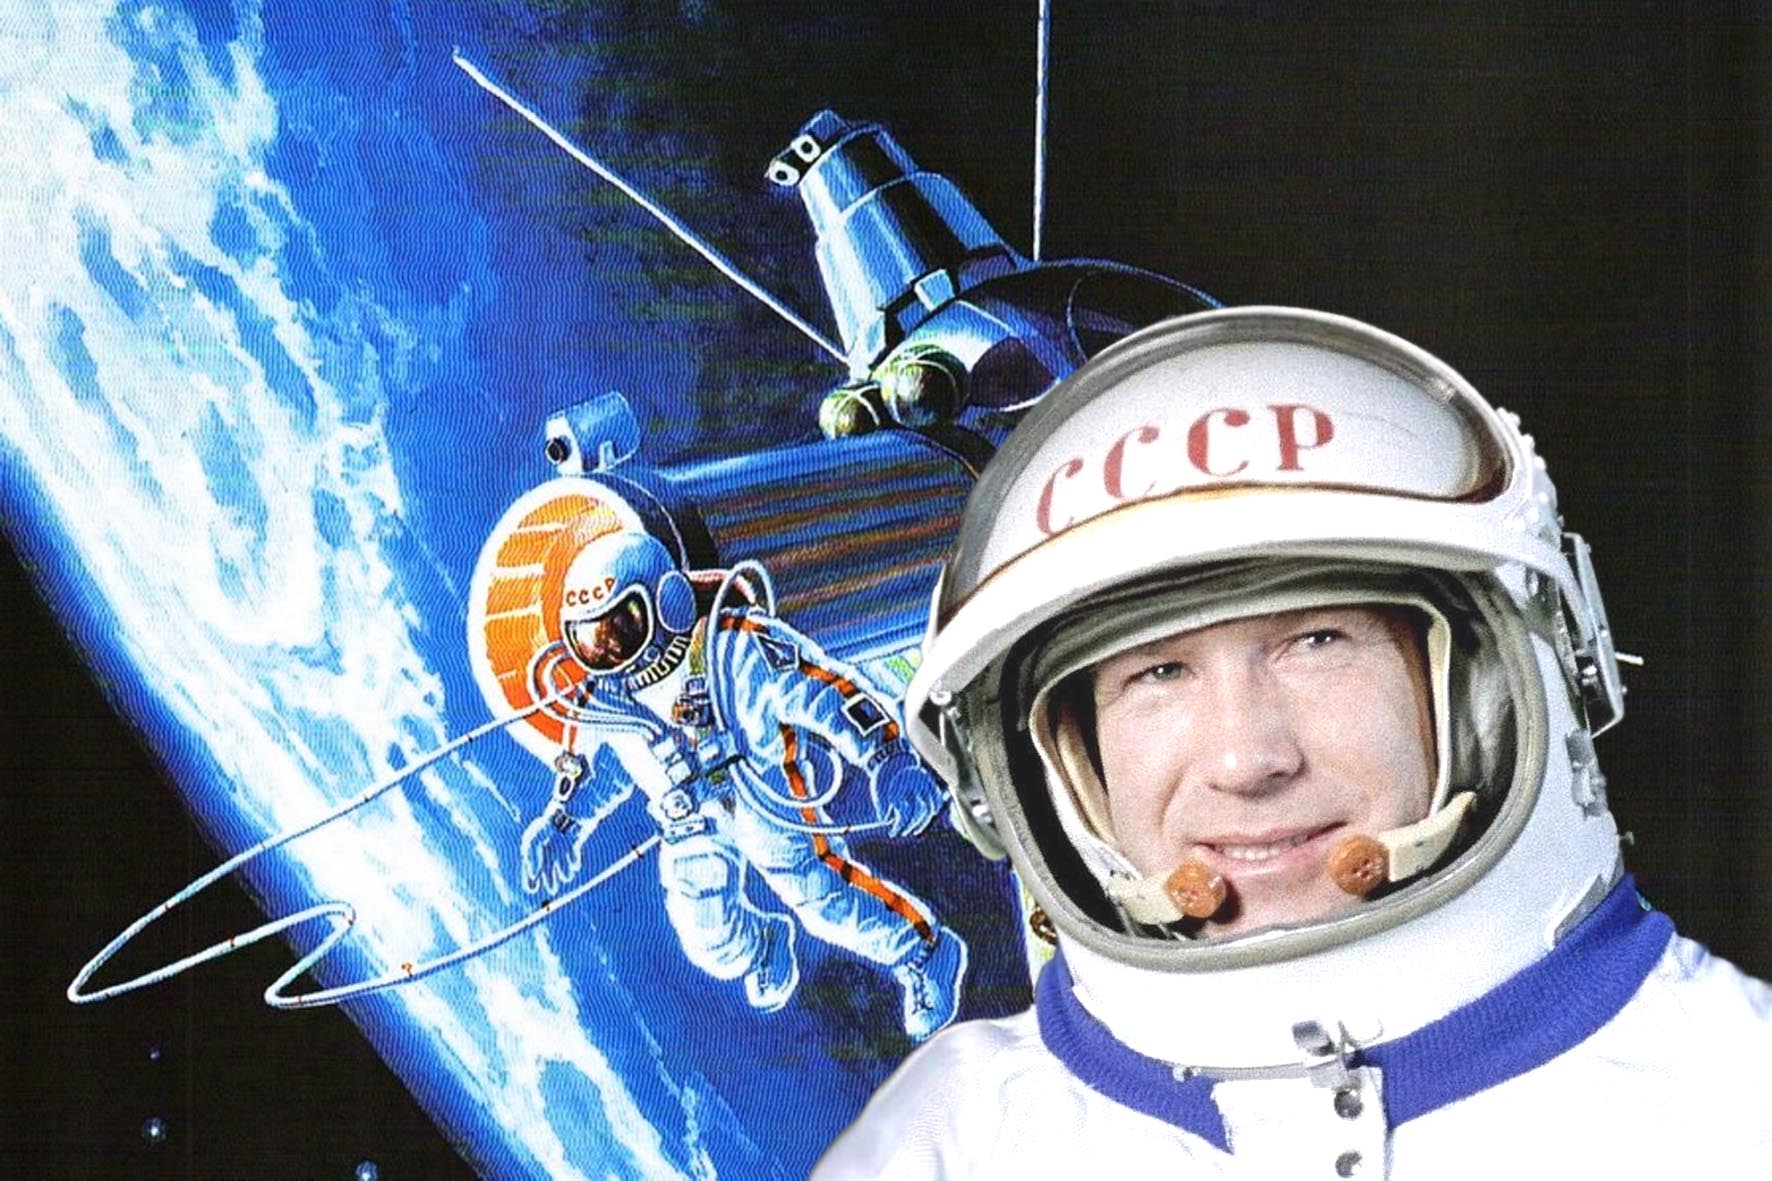 Первый мужчина в открытом космосе. Выход в открытый космос Алексея Архиповича Леонова.